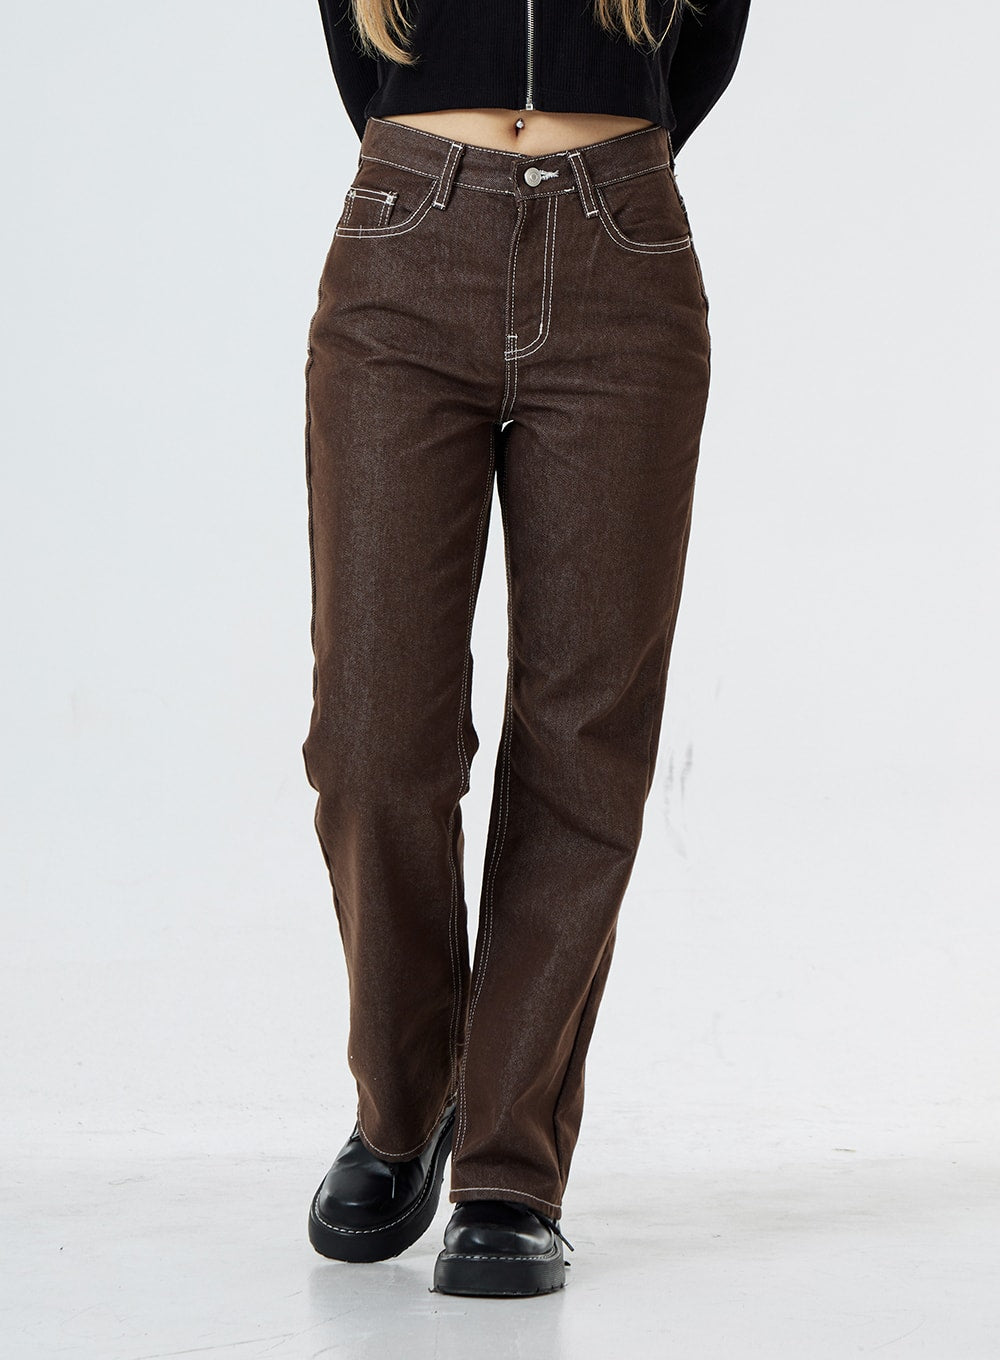 Levi's 511 Slim Fit Mens Jeans Color Brown 045115428